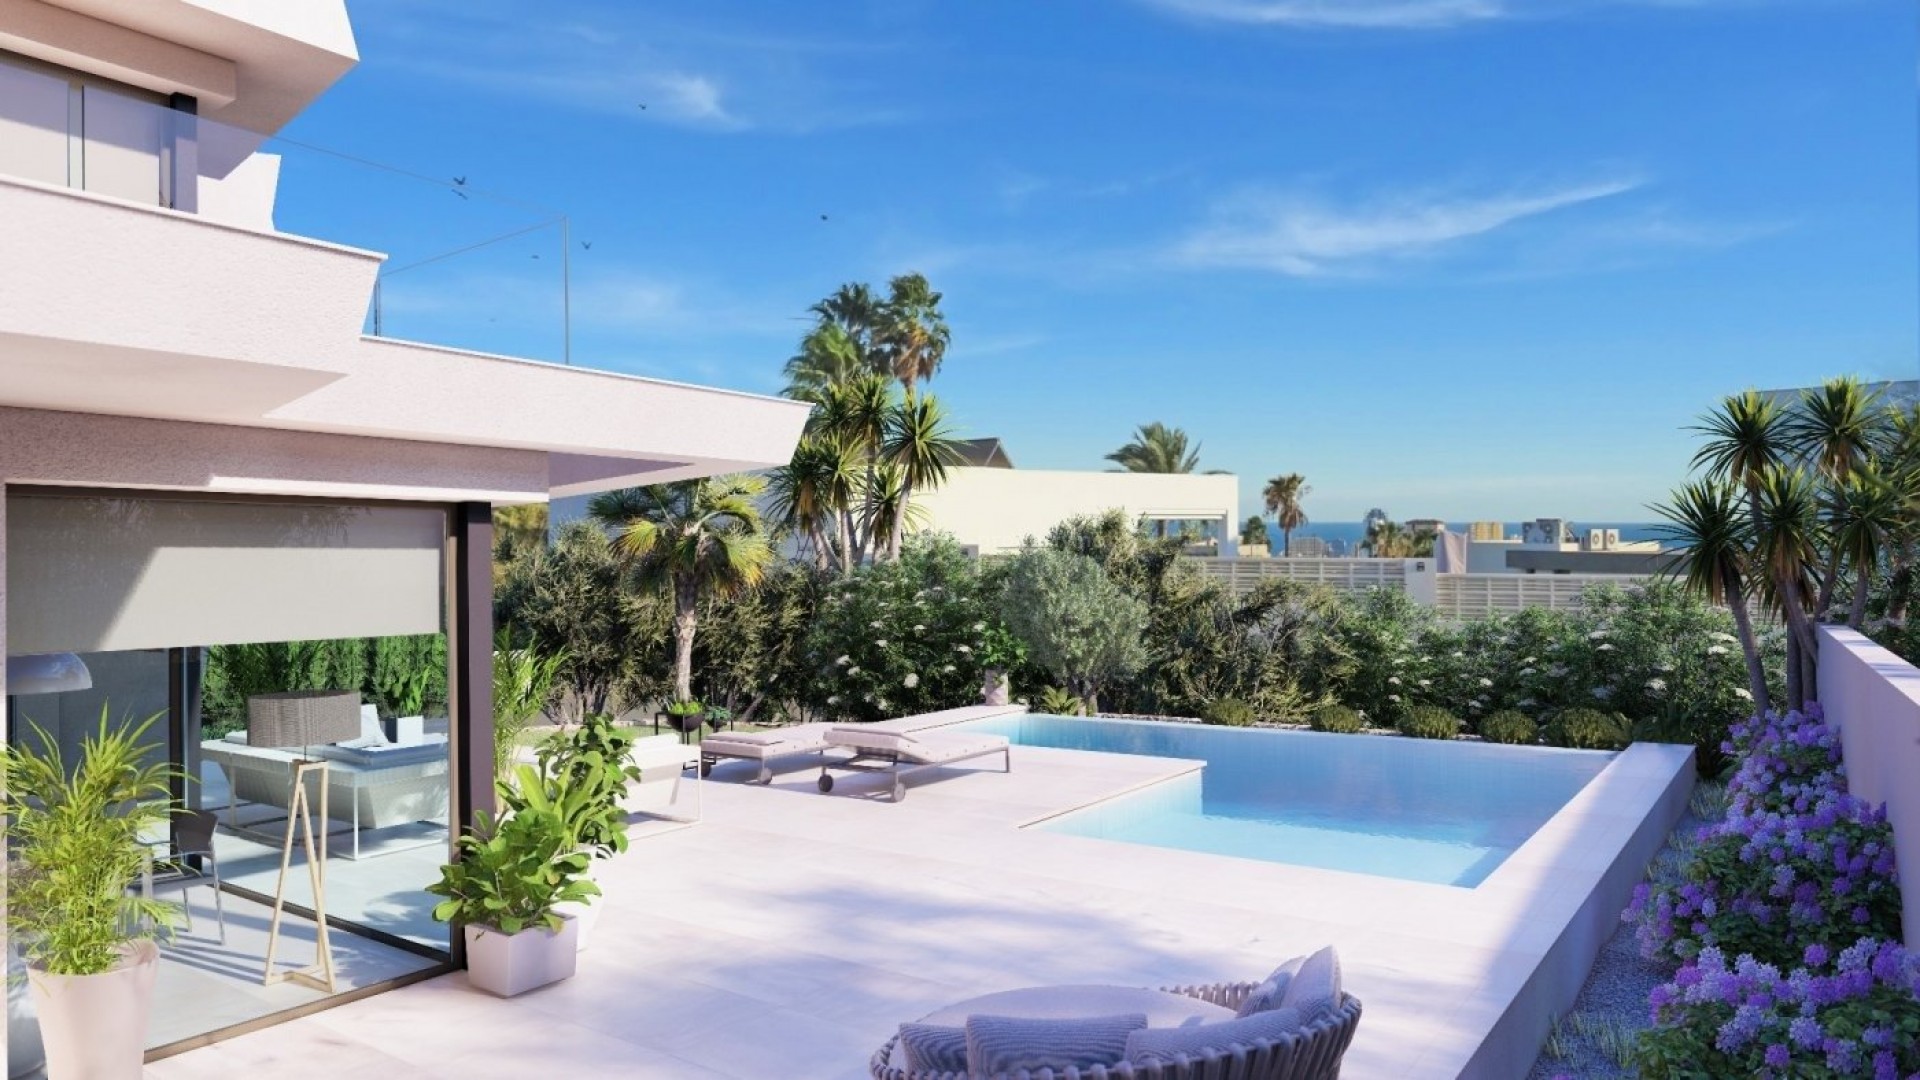 Luksus-villa i Calpe (Alicante) fordelt over to etasjer med 4 soverom og 4 bad, Fra alle rom har denne villaen panoramautsikt over Middelhavet. 